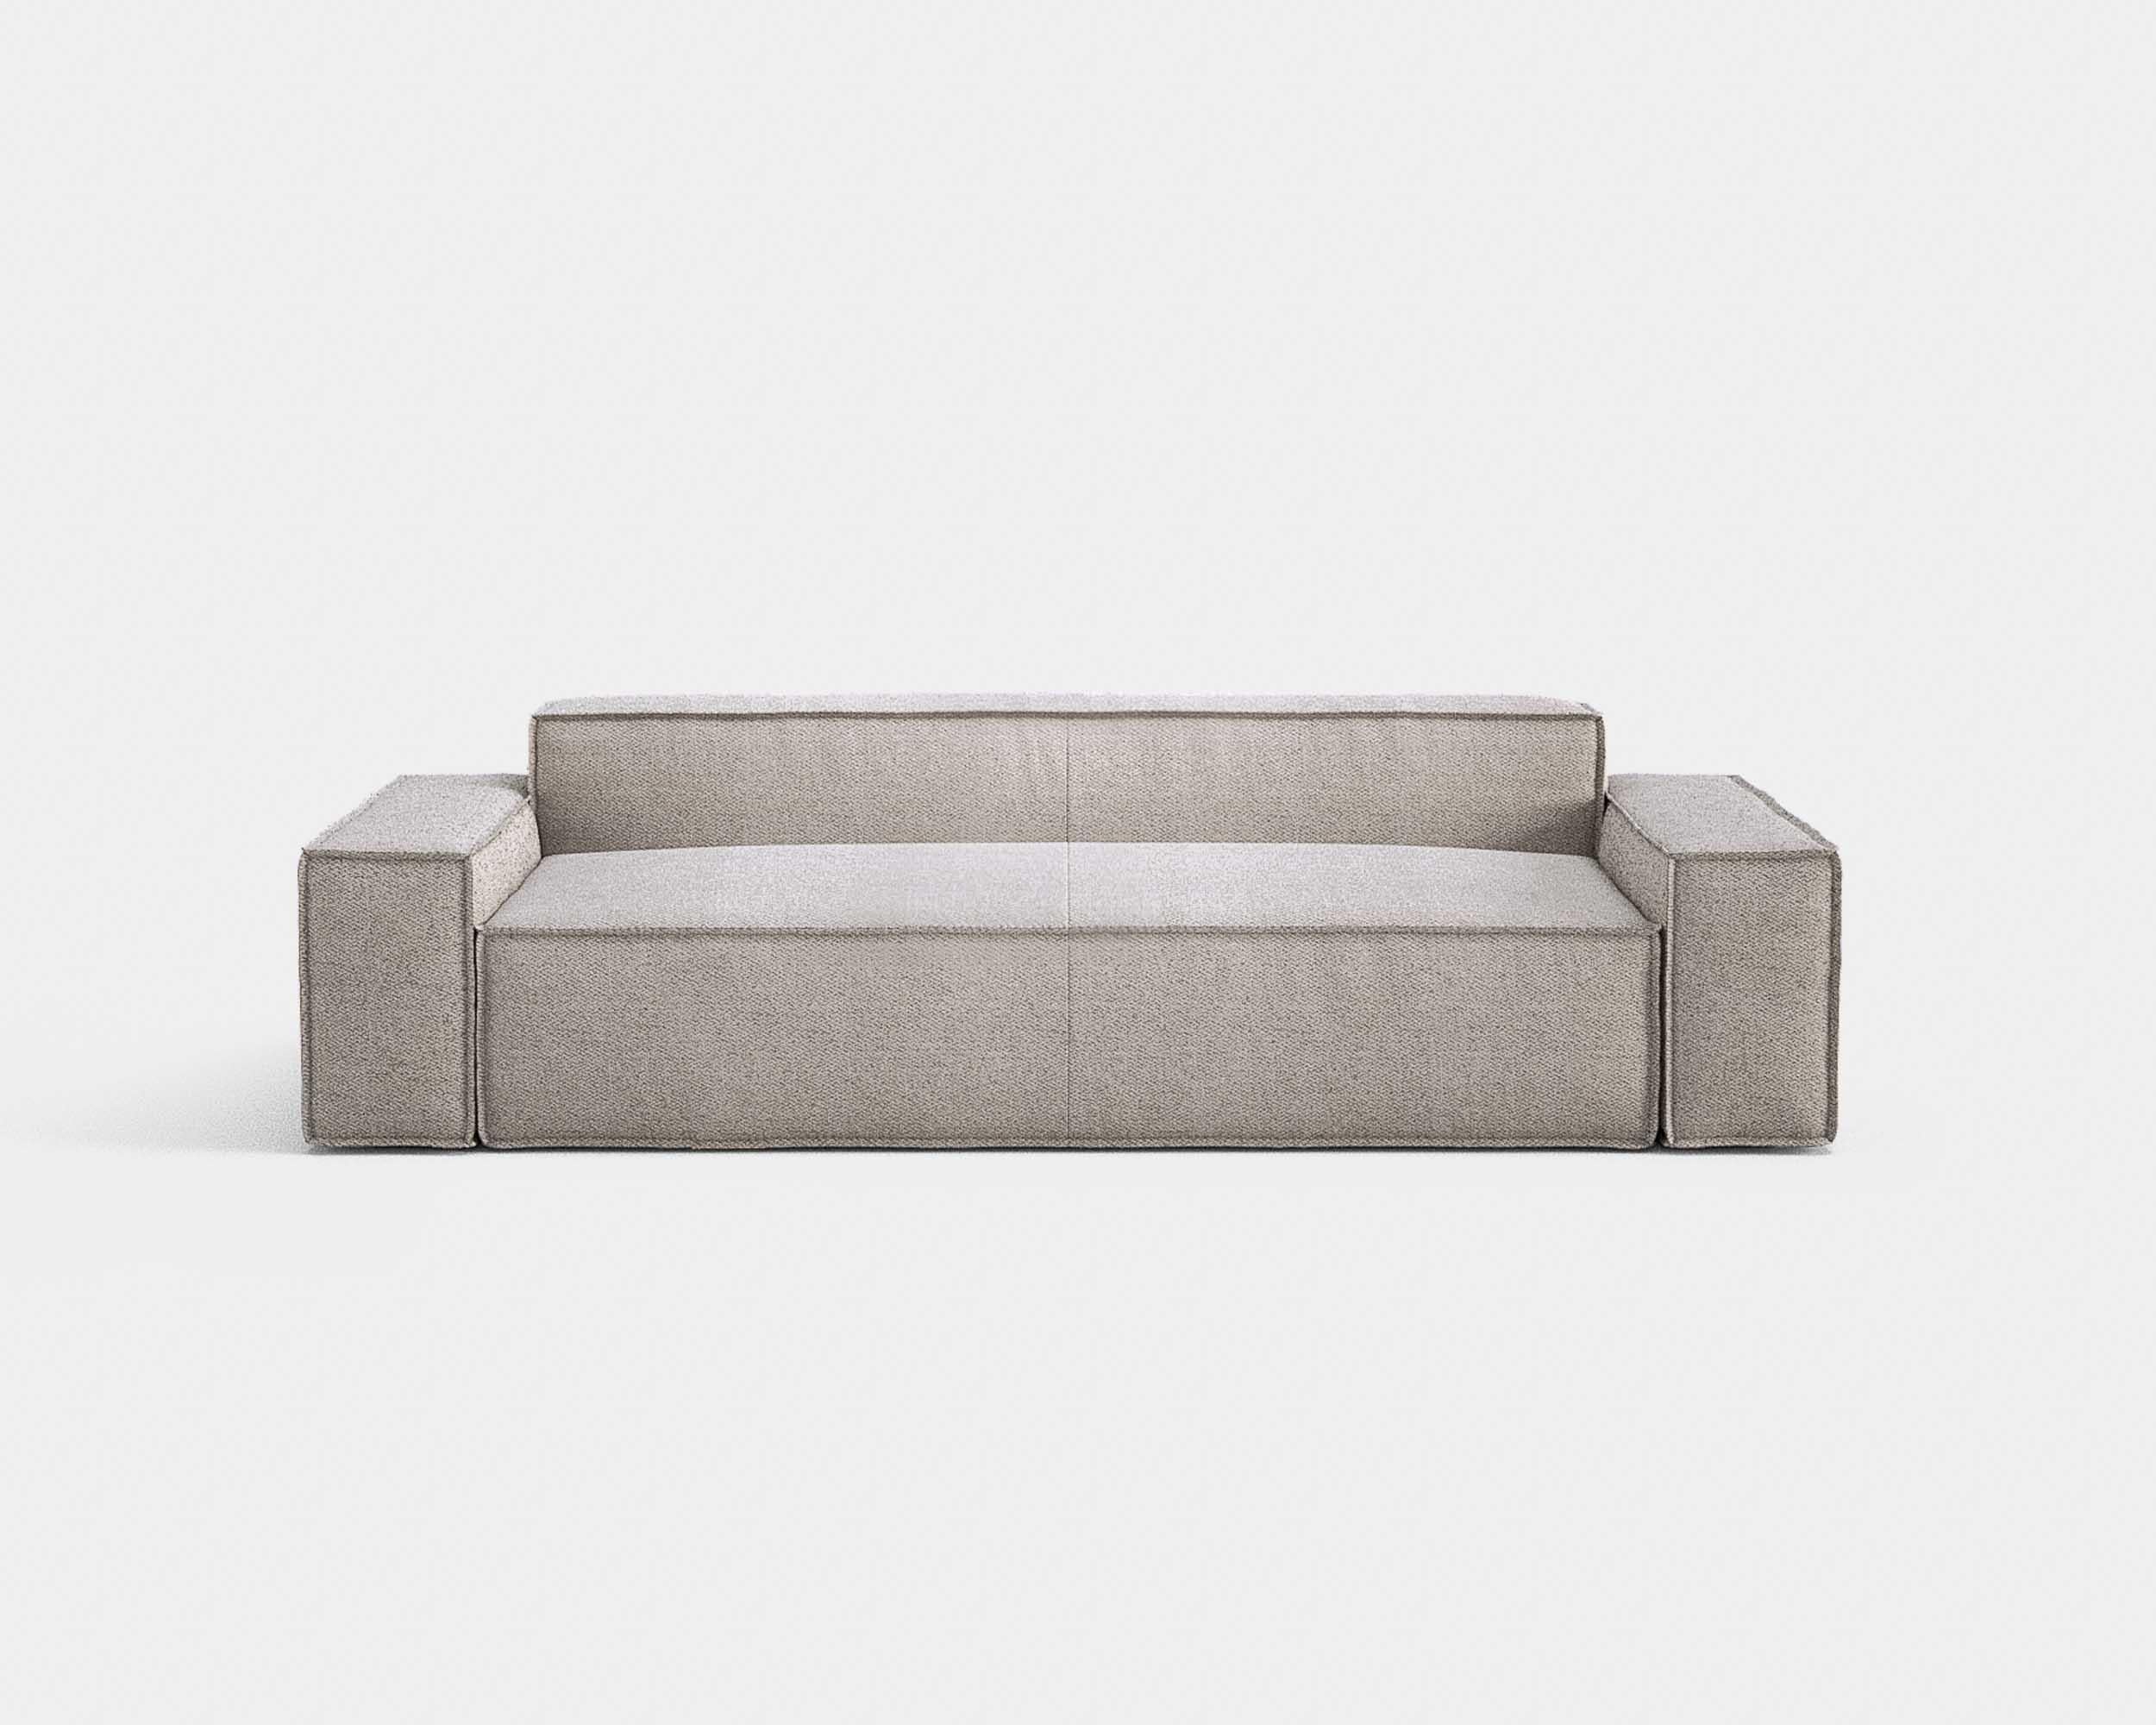 Italian Contemporary Sofa 'Davis' by Amura Lab, Model 021.022, Brera 850, Green 11 For Sale